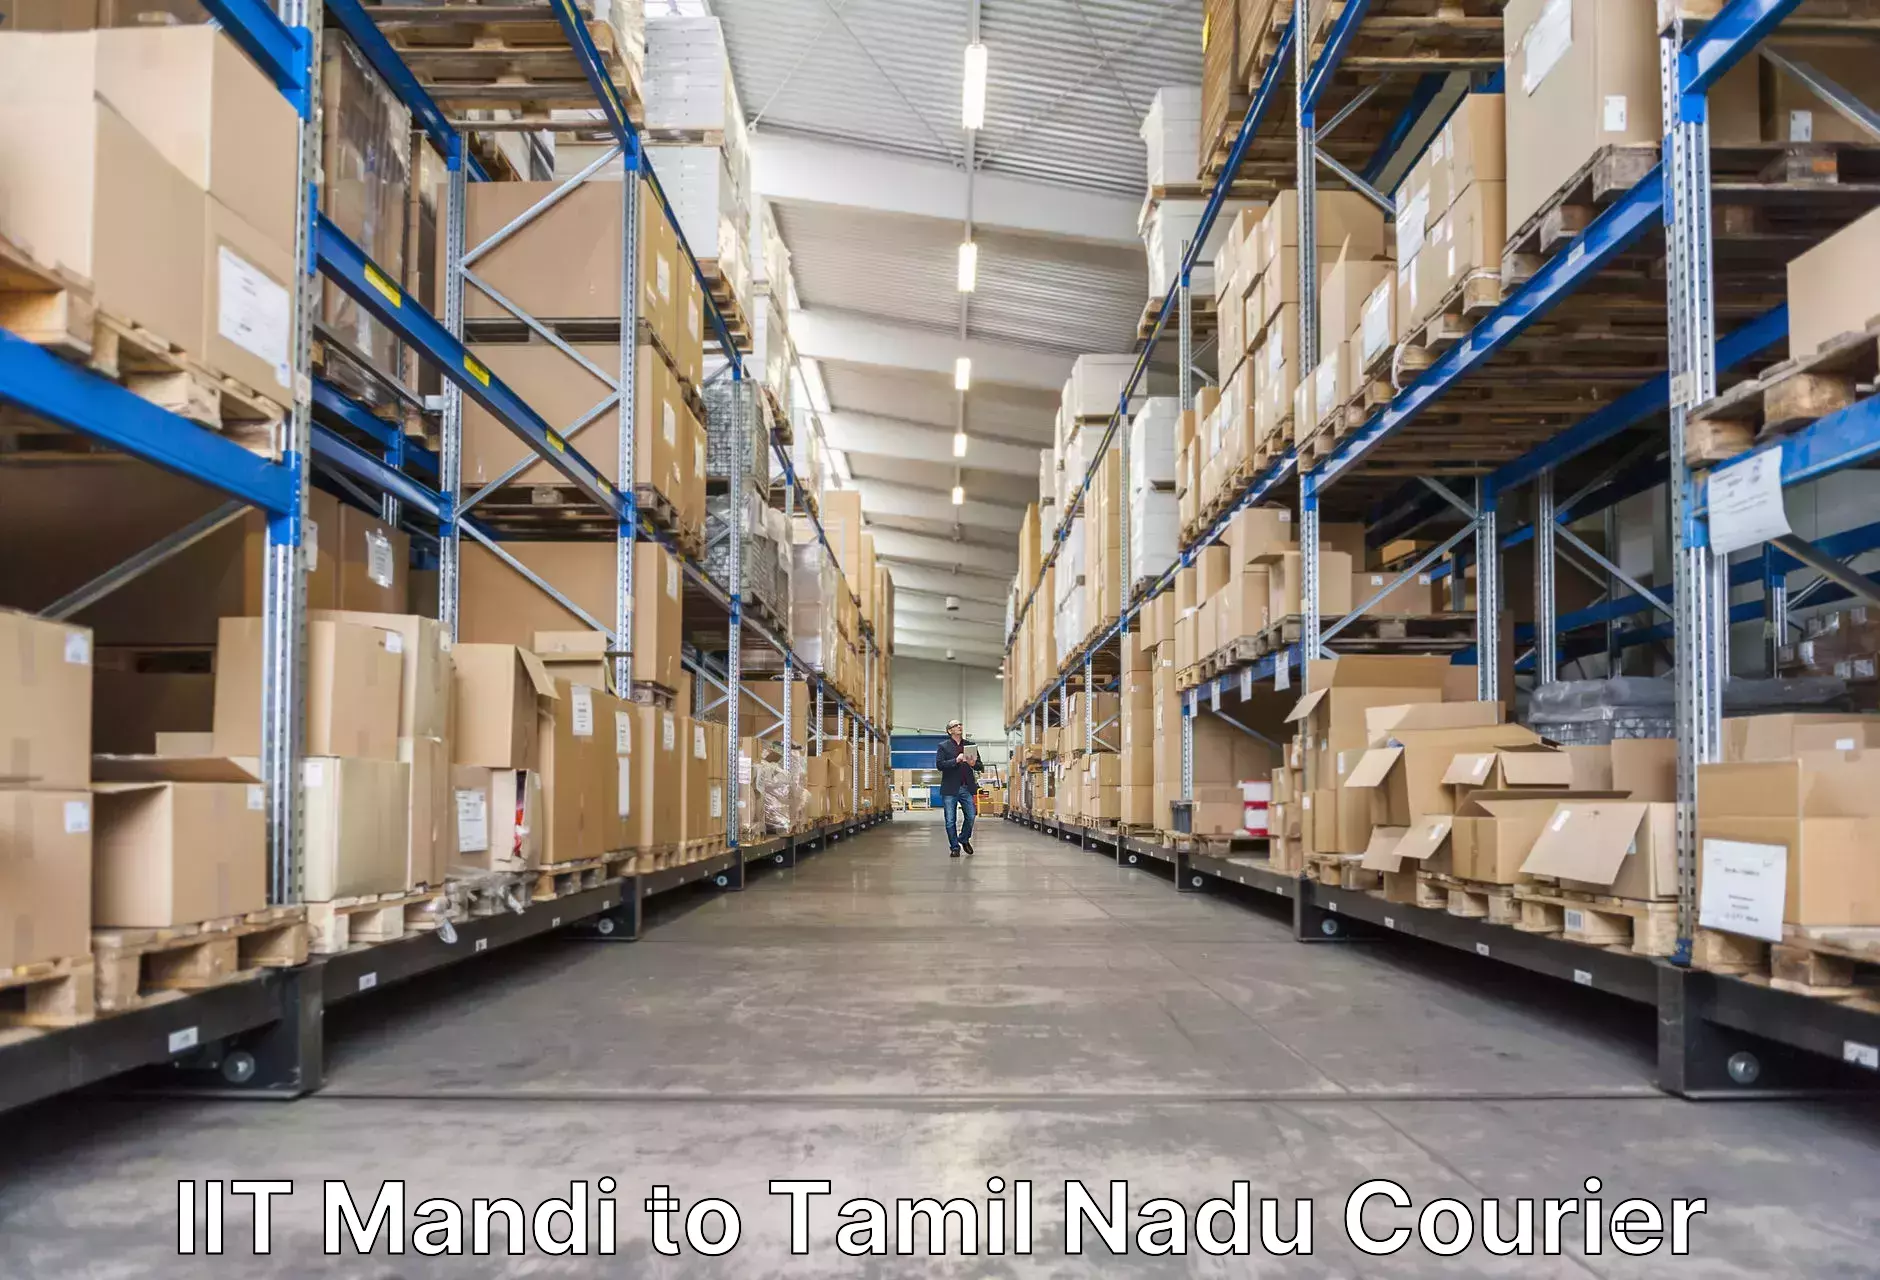 Baggage transport professionals IIT Mandi to Tamil Nadu